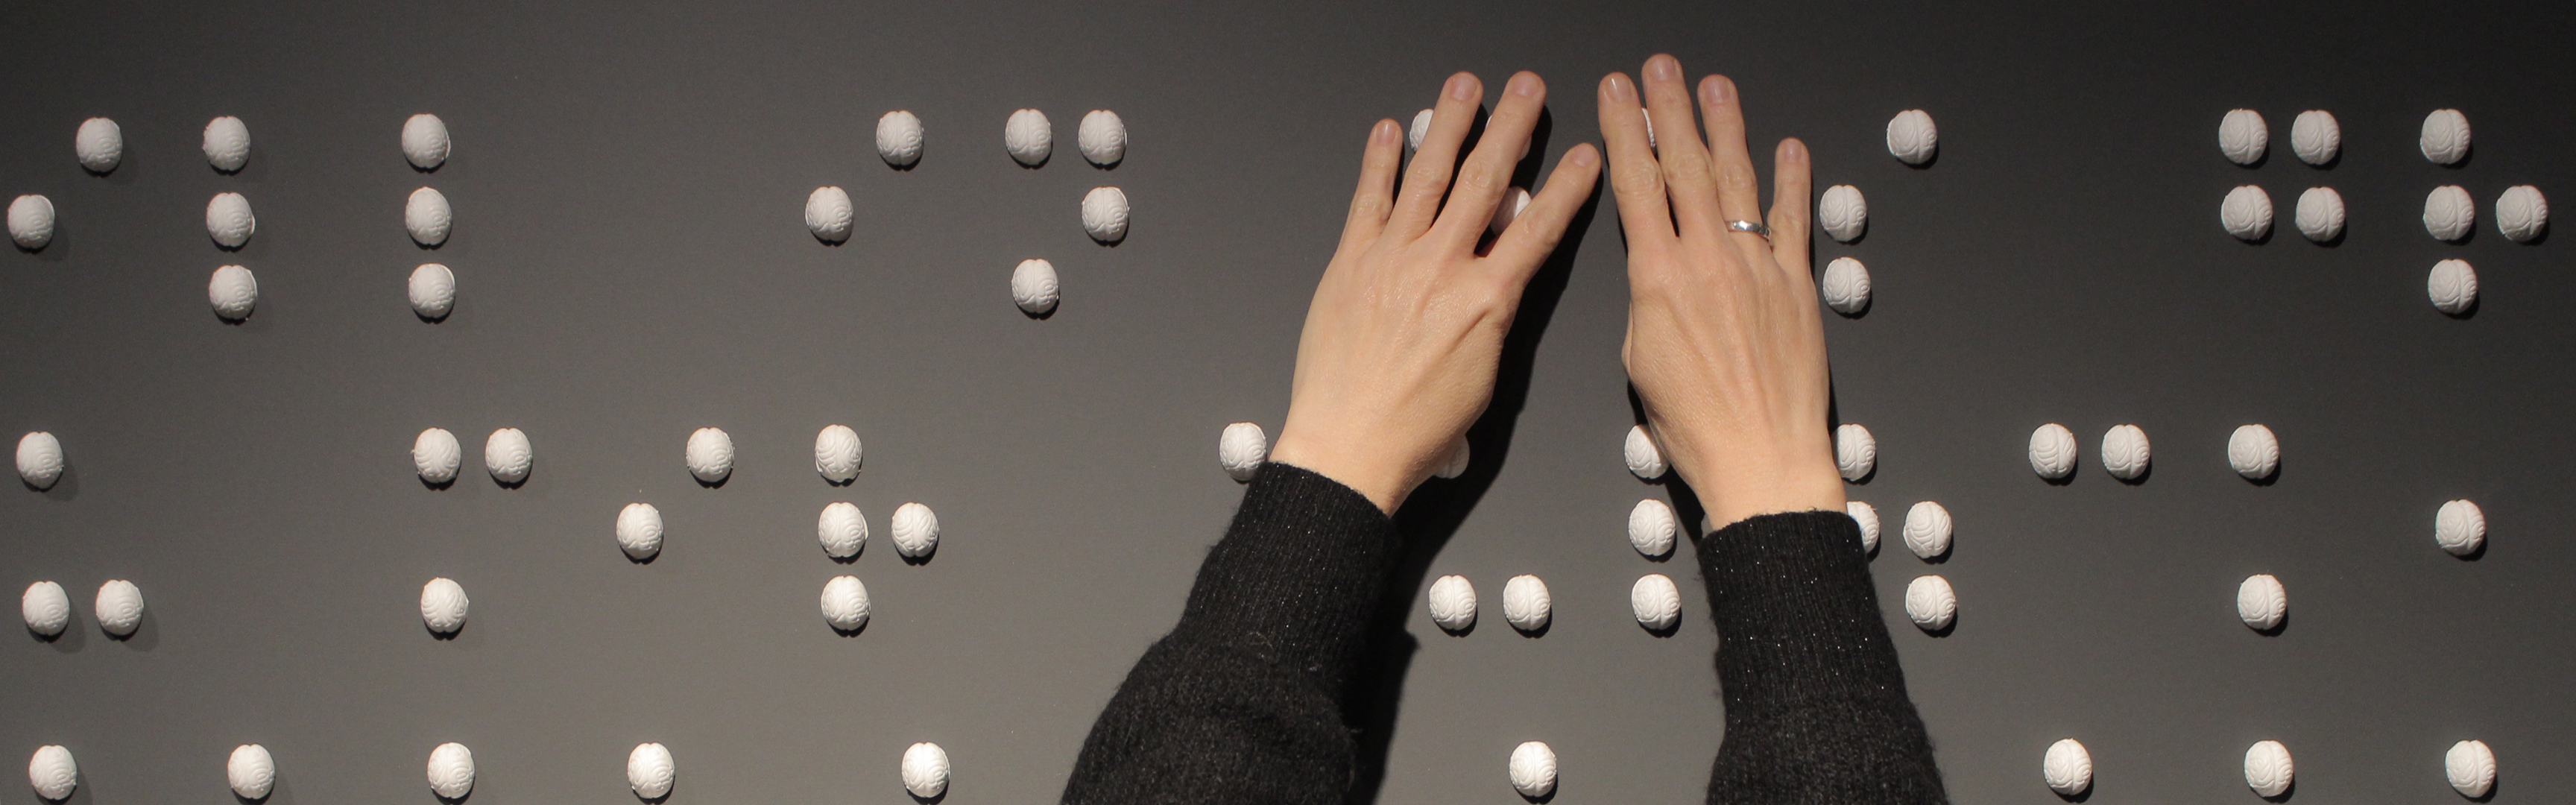 Finger ertasten weiße Elemente in Braille-Schrift